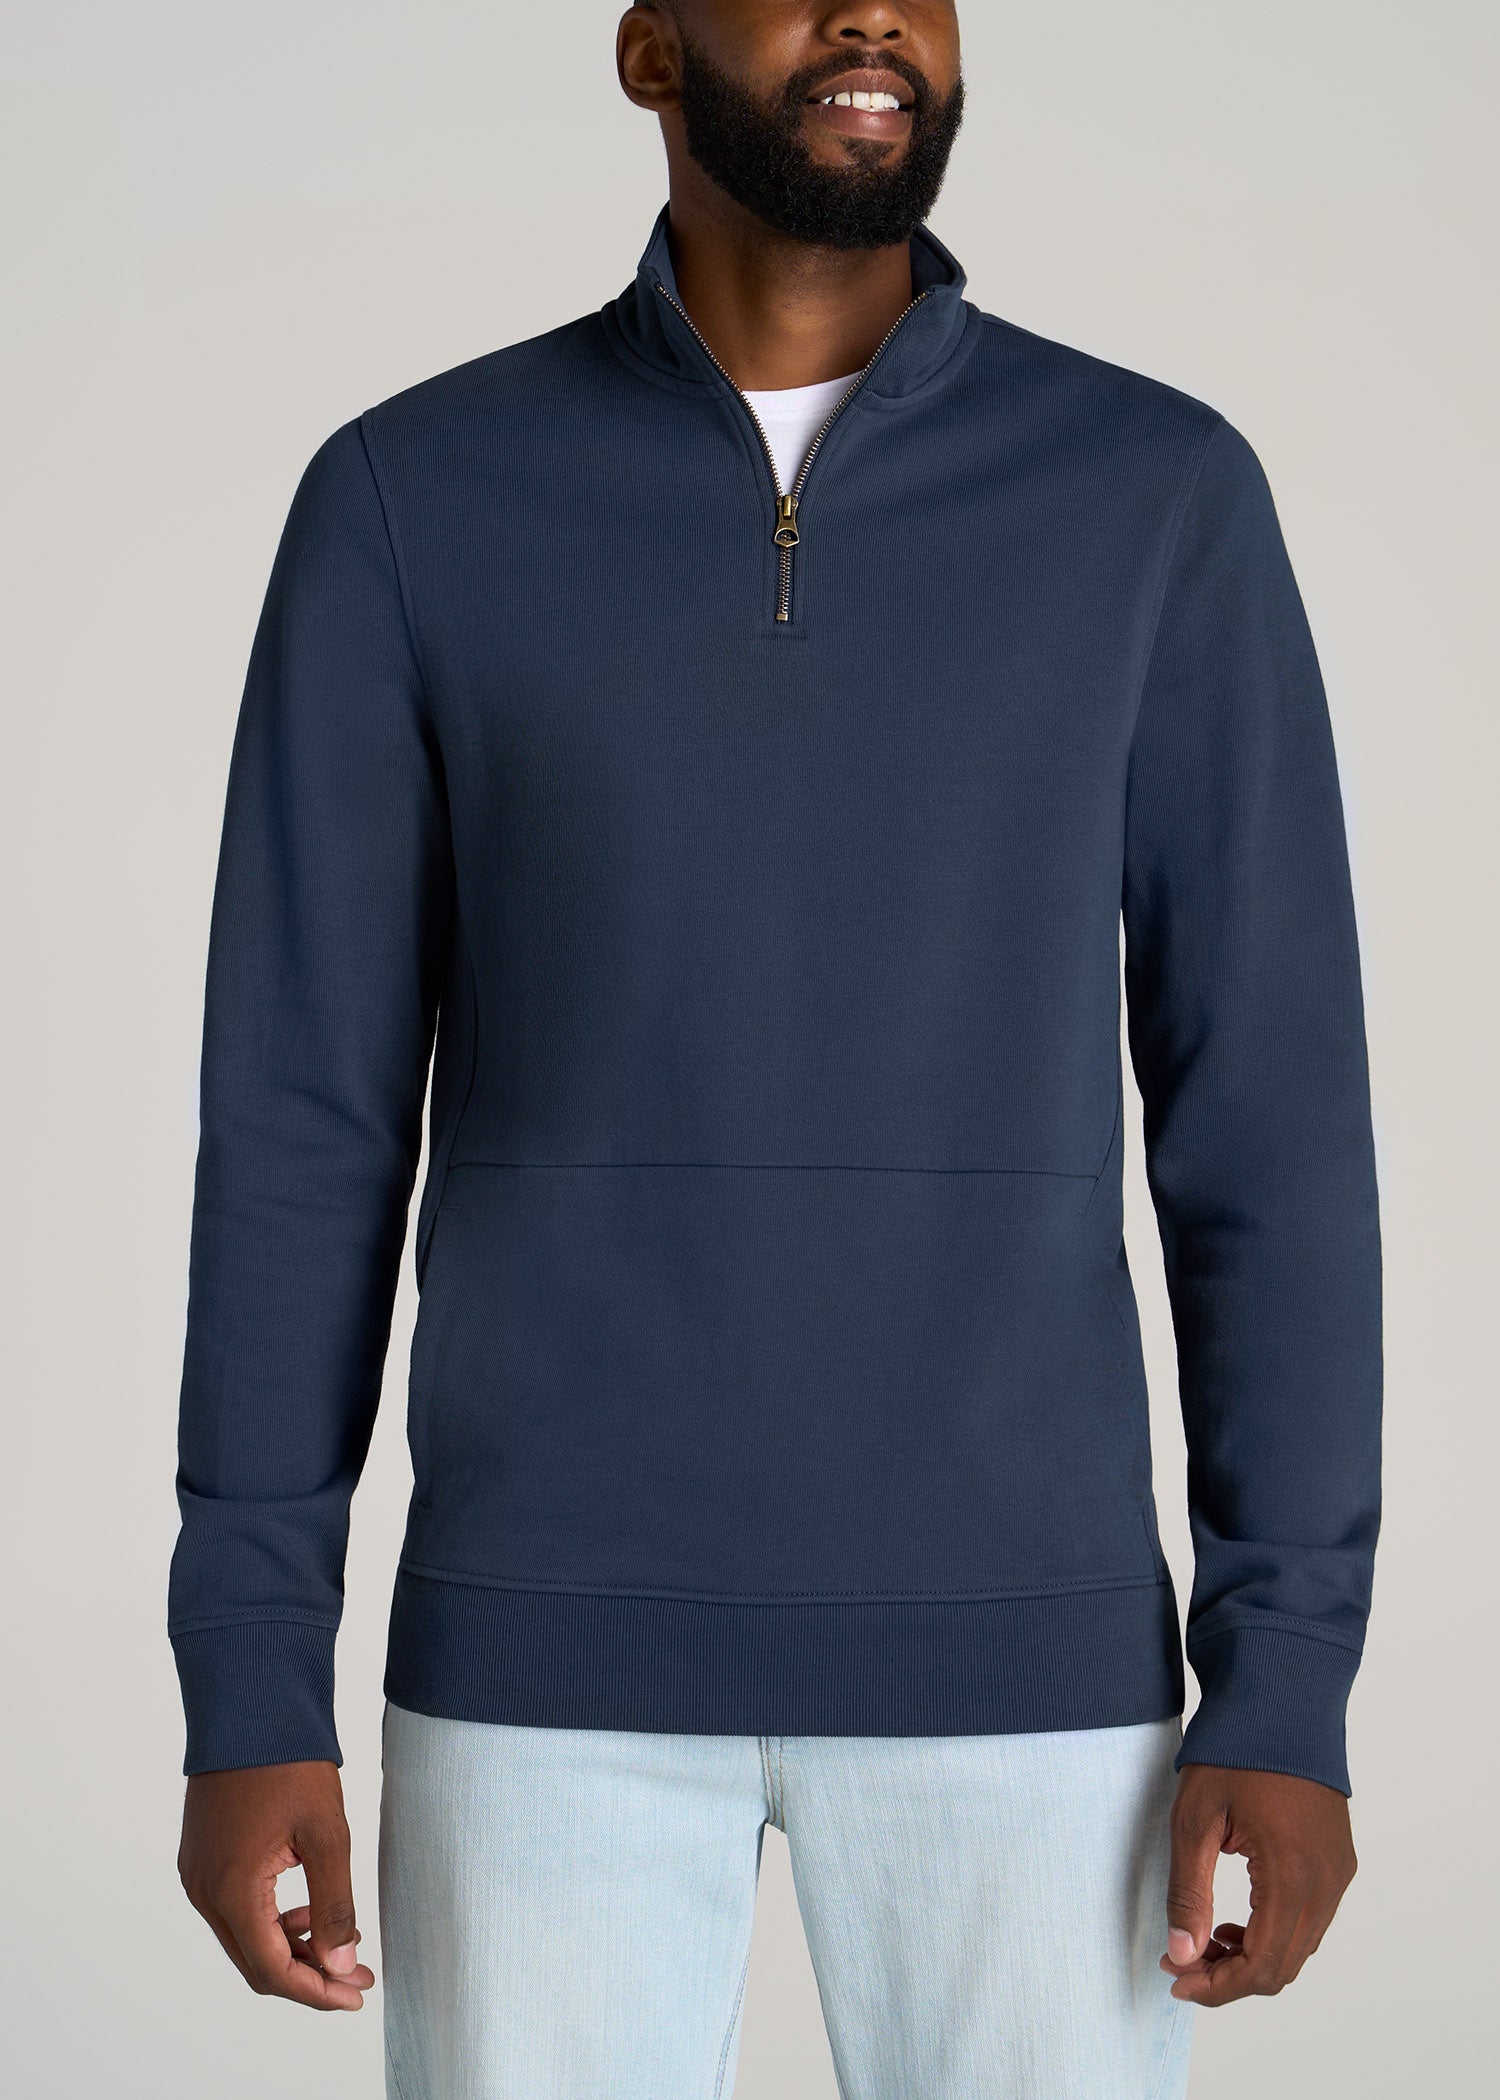 Men's 100% Cotton Quarter Zip Heavy Weight Sweatshirt